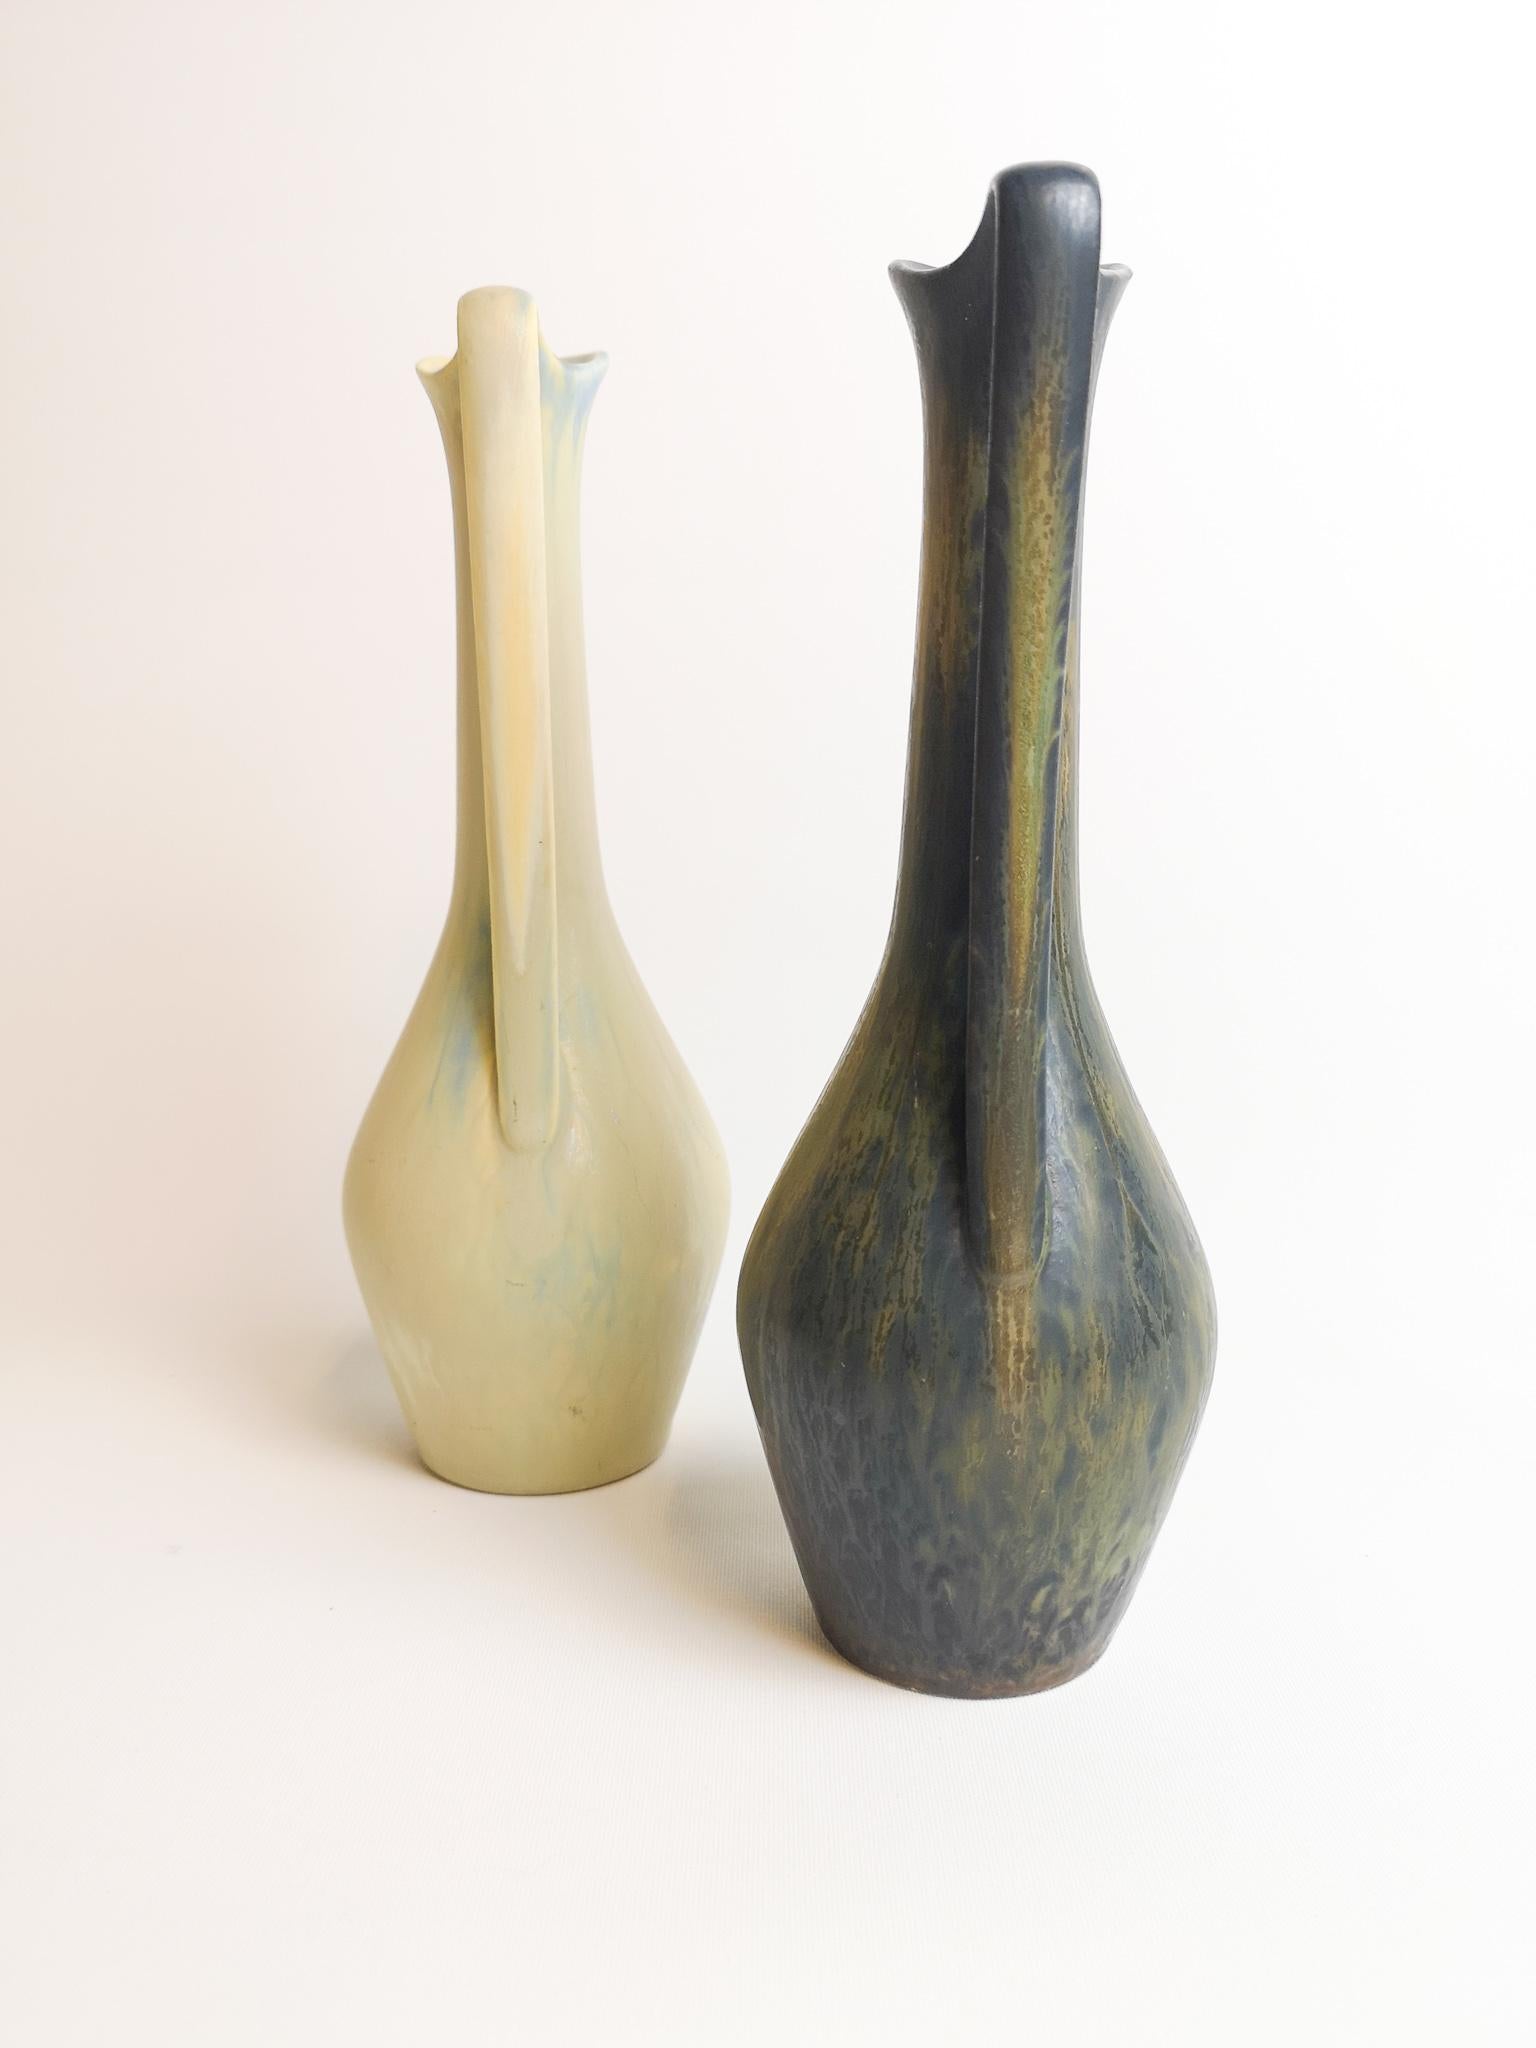 Deux magnifiques vases de Rörstrand et du créateur/désigner Gunnar Nylund. Fabriqué en Suède au milieu du siècle dernier. Beaux vases émaillés en bon état. 

Mesure H 24 x D 8cm.